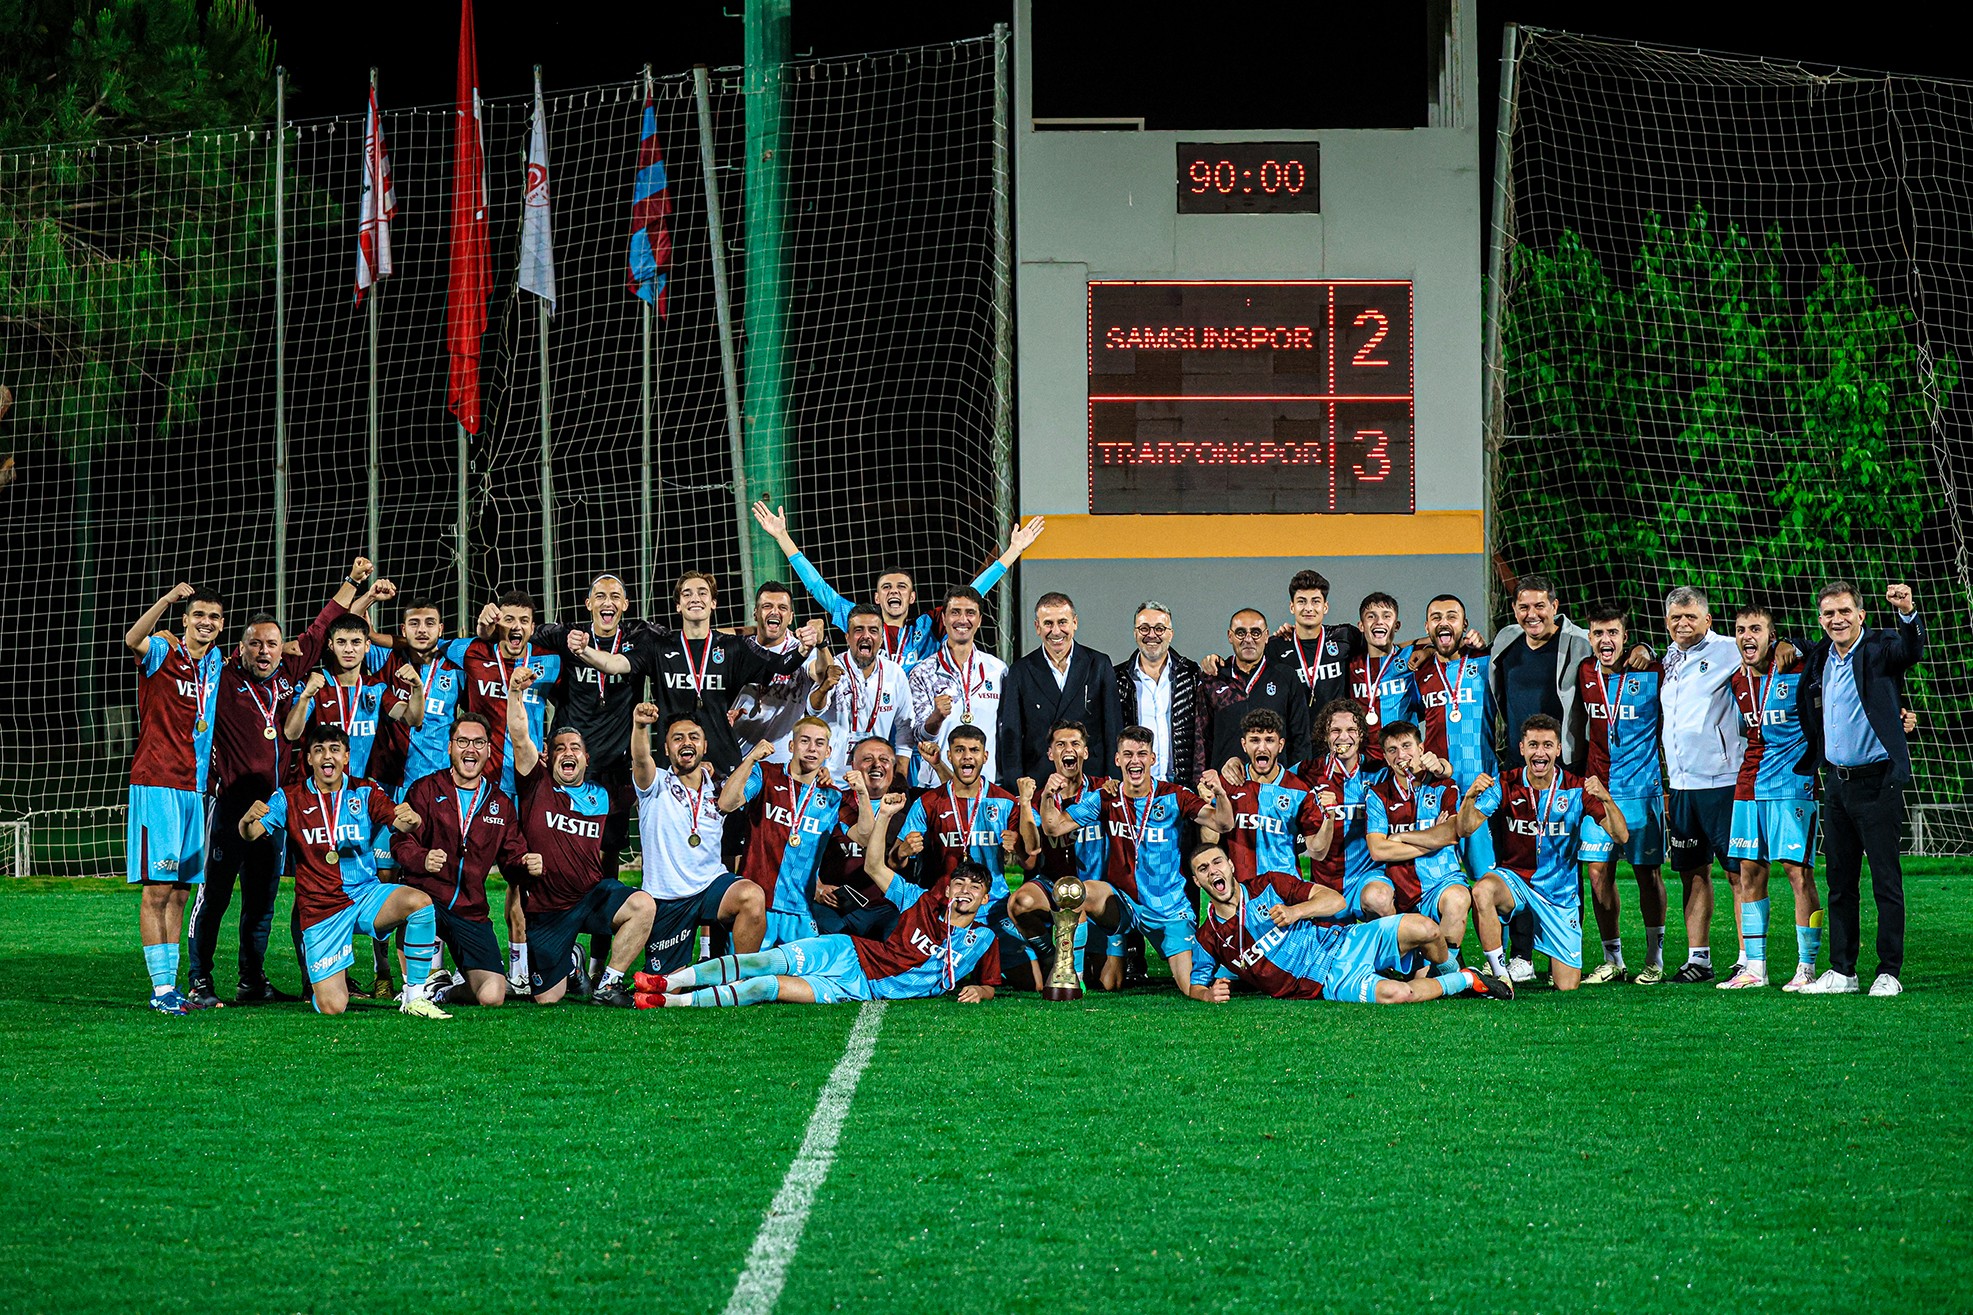  U19 Ligi Finali’nde Yılport Samsunspor’u Yenen Trabzonspor Kupaya Uzandı 3-2